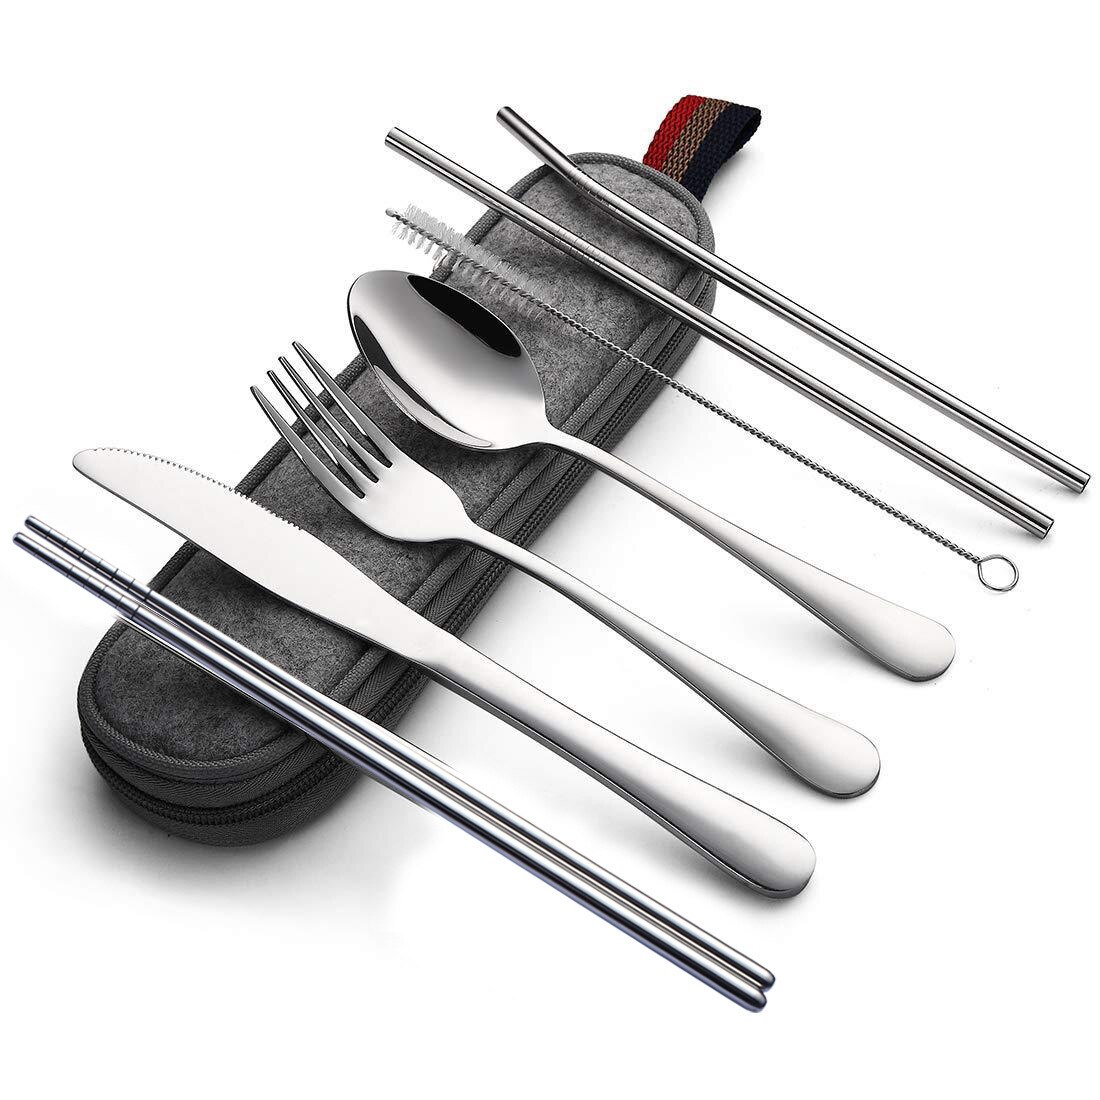 Couverts de voyage, ensemble de vaisselle, argenterie réutilisable avec paille en métal cuillère fourchette baguettes accessoire de cuisine avec étui 7 pièces